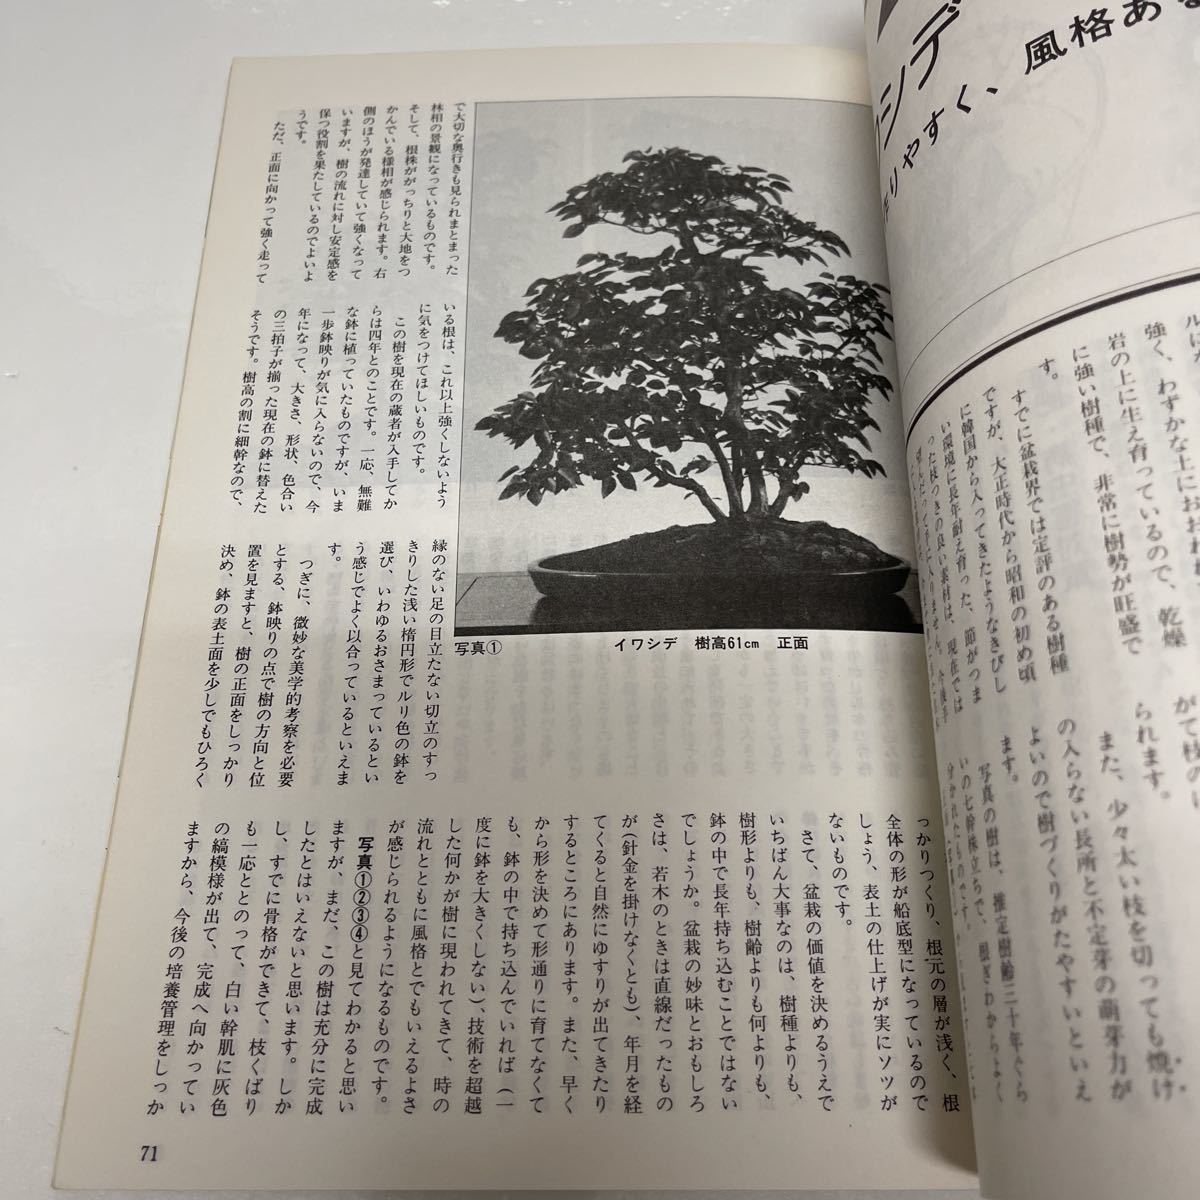 盆栽世界 1986年1月号 草もの盆栽としての笹 日本盆栽作風展 迎春鉢物の作り方_画像5